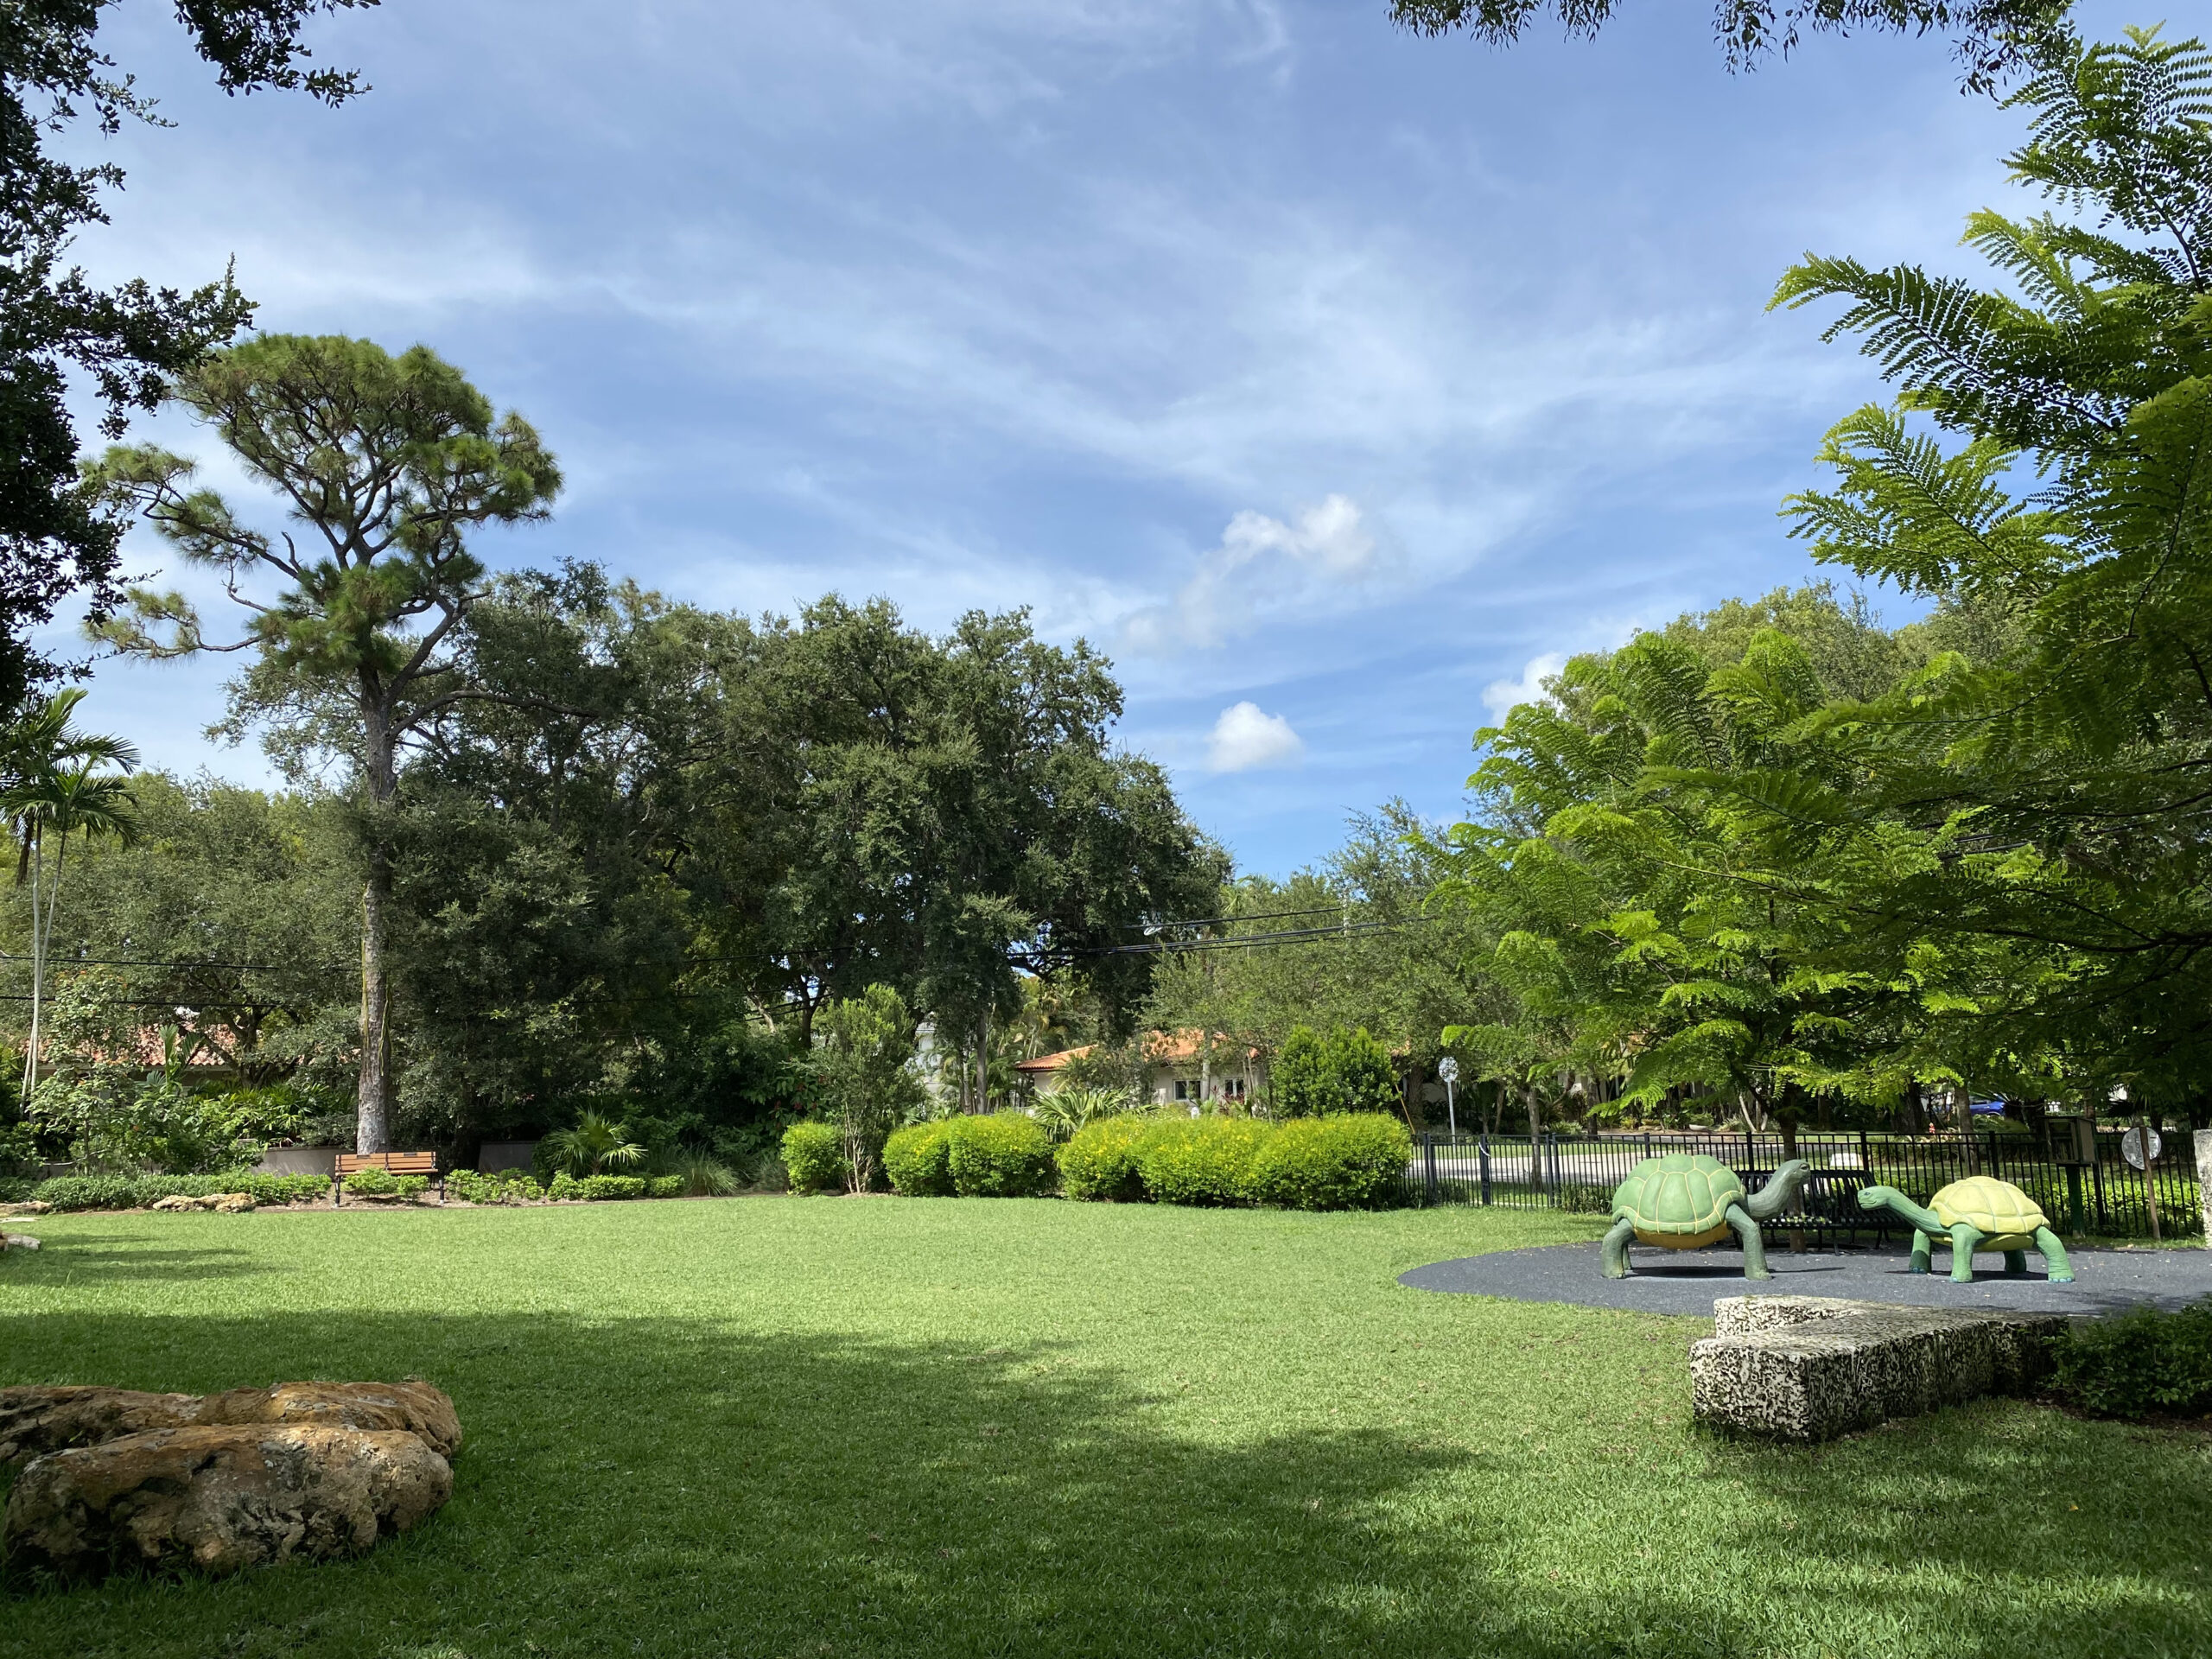 Catalonia Park – Coral Gables, Florida